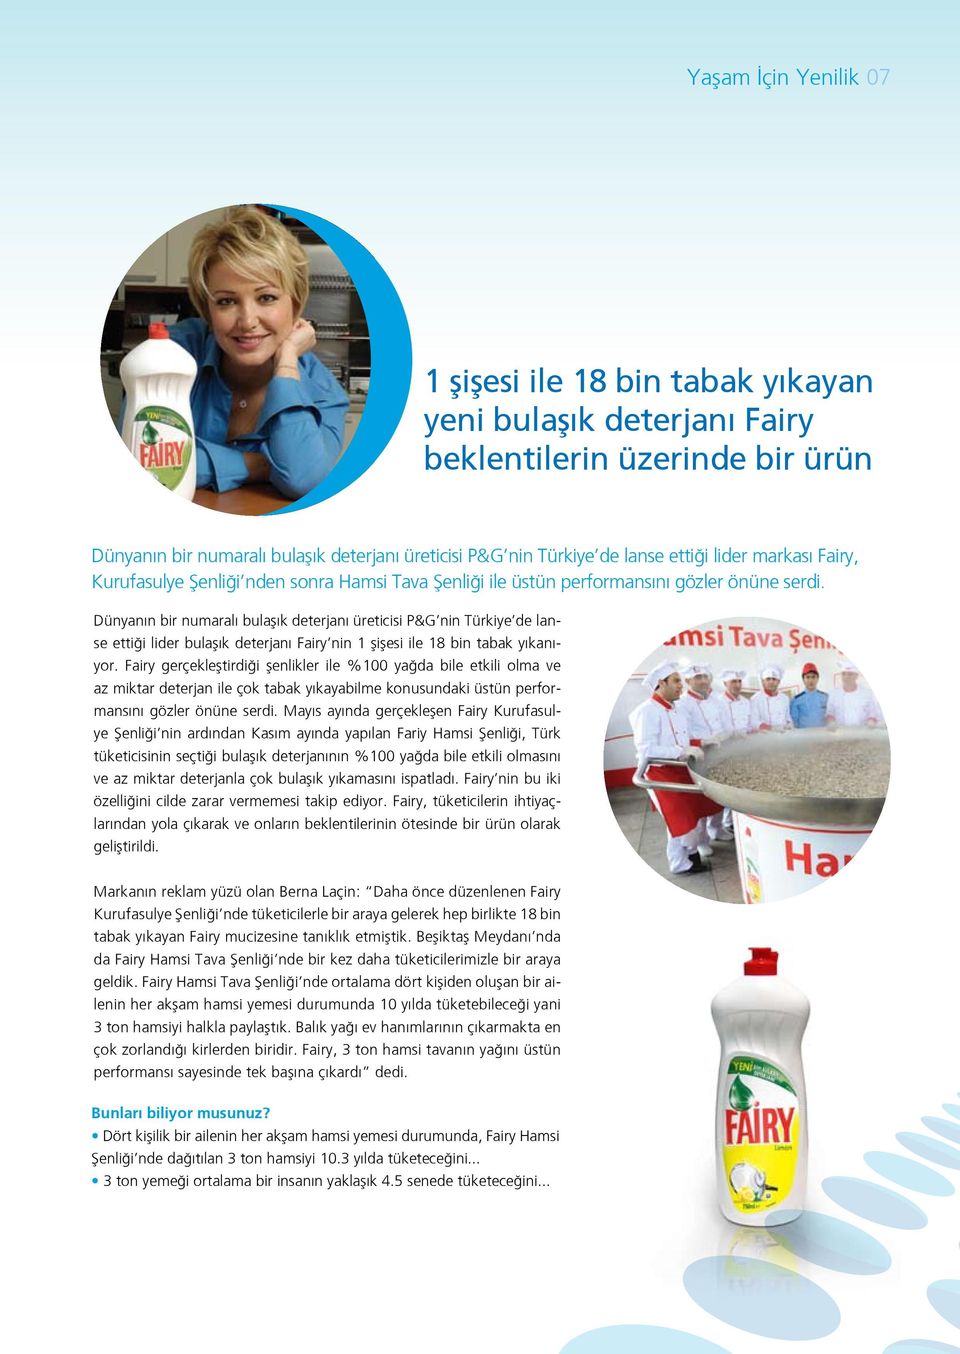 Dünyanın bir numaralı bulaşık deterjanı üreticisi P&G nin Türkiye de lanse ettiği lider bulaşık deterjanı Fairy nin 1 şişesi ile 18 bin tabak yıkanıyor.